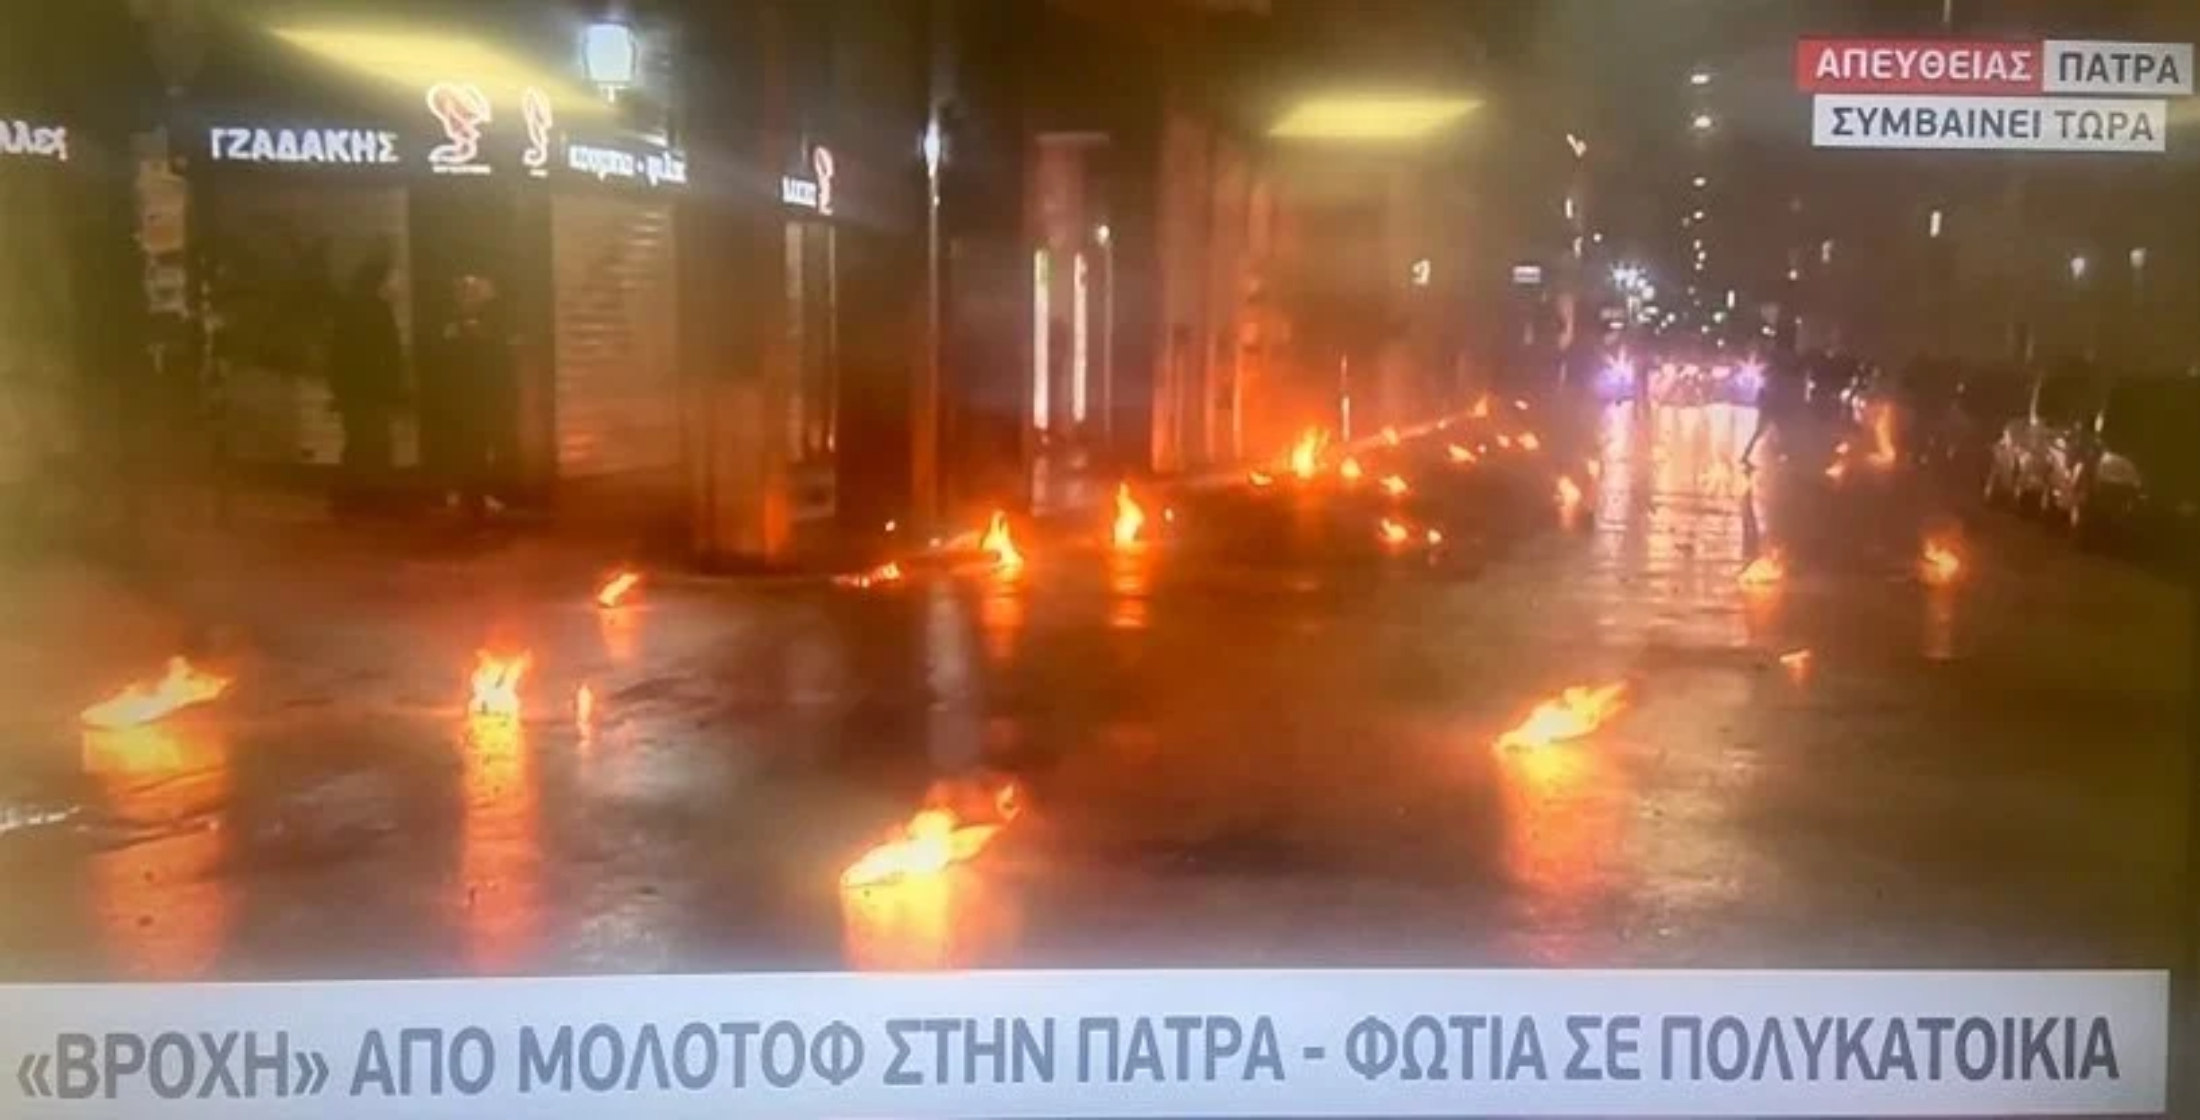 Πολυτεχνείο: Επεισόδια και «βροχή» από μολότοφ στην Πάτρα -Έπιασε φωτιά όροφος πολυκατοικίας (VIDEO0